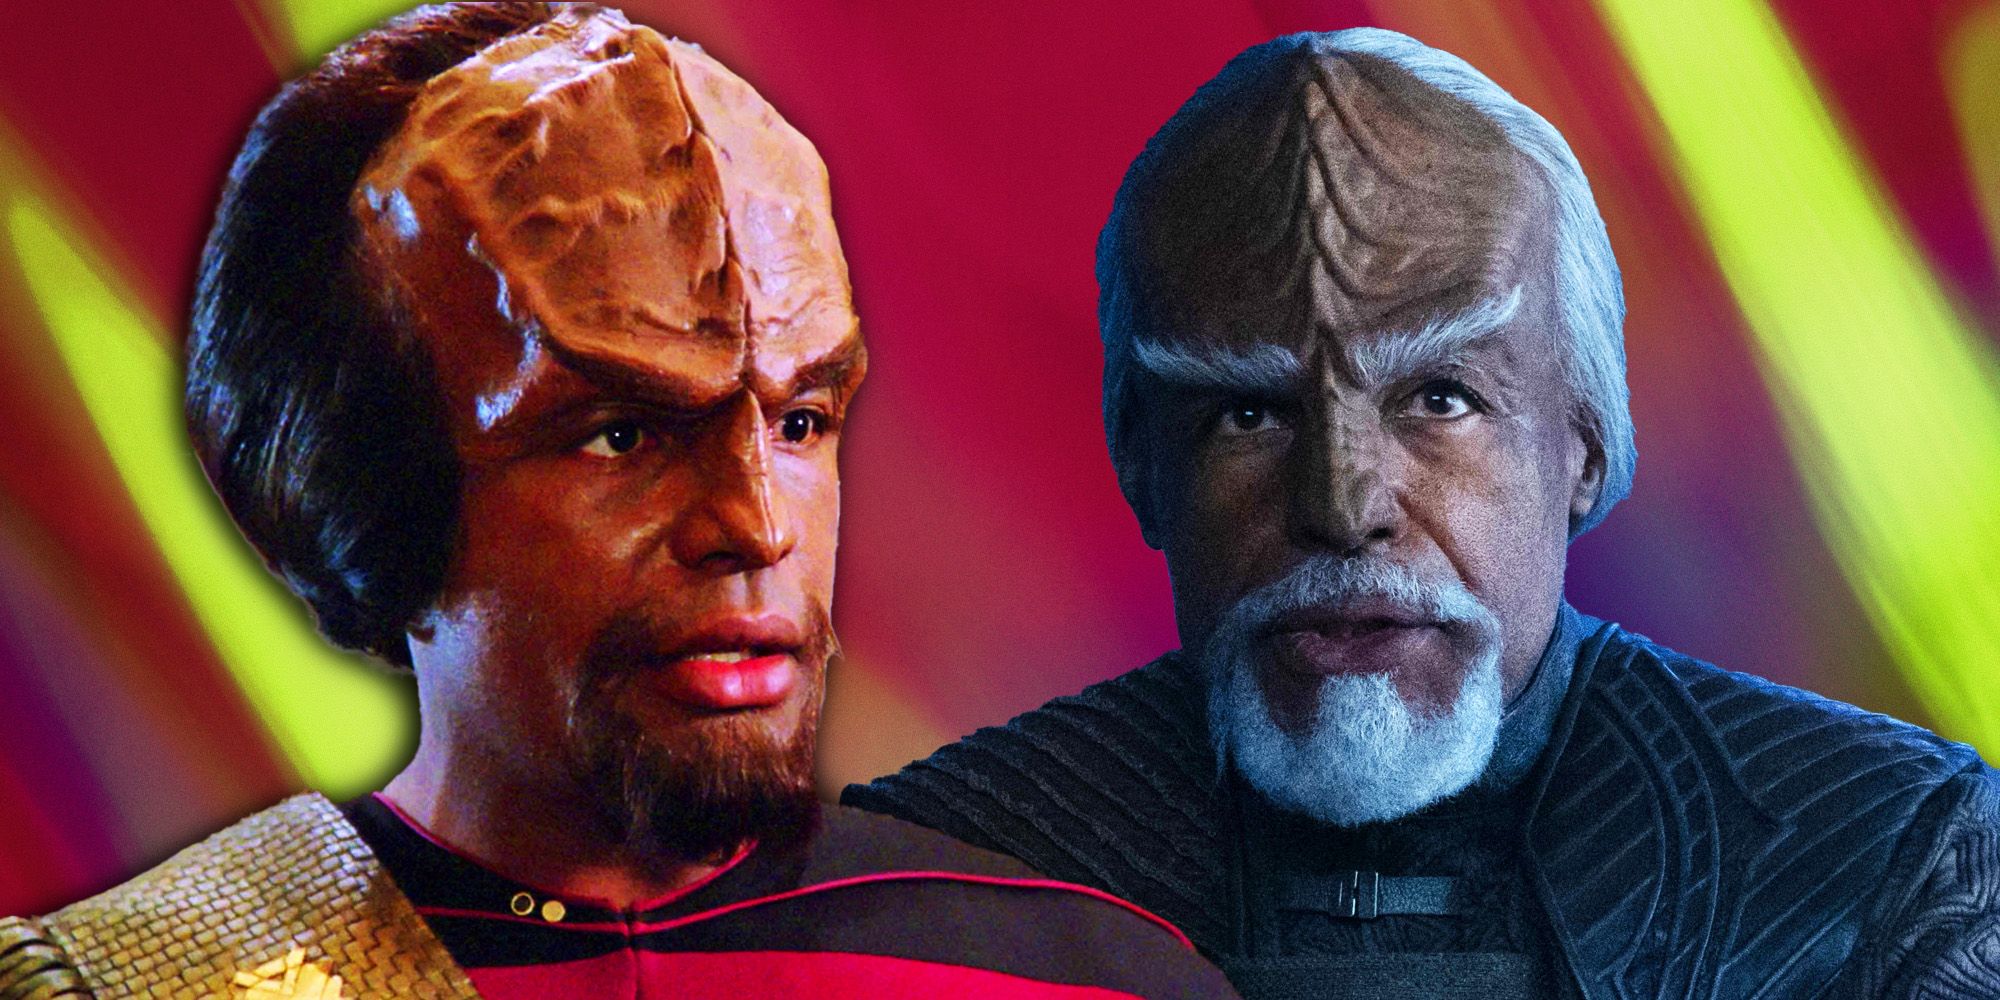 El mayor temor de Worf a Star Trek fue superado por la temporada 3 de Picard